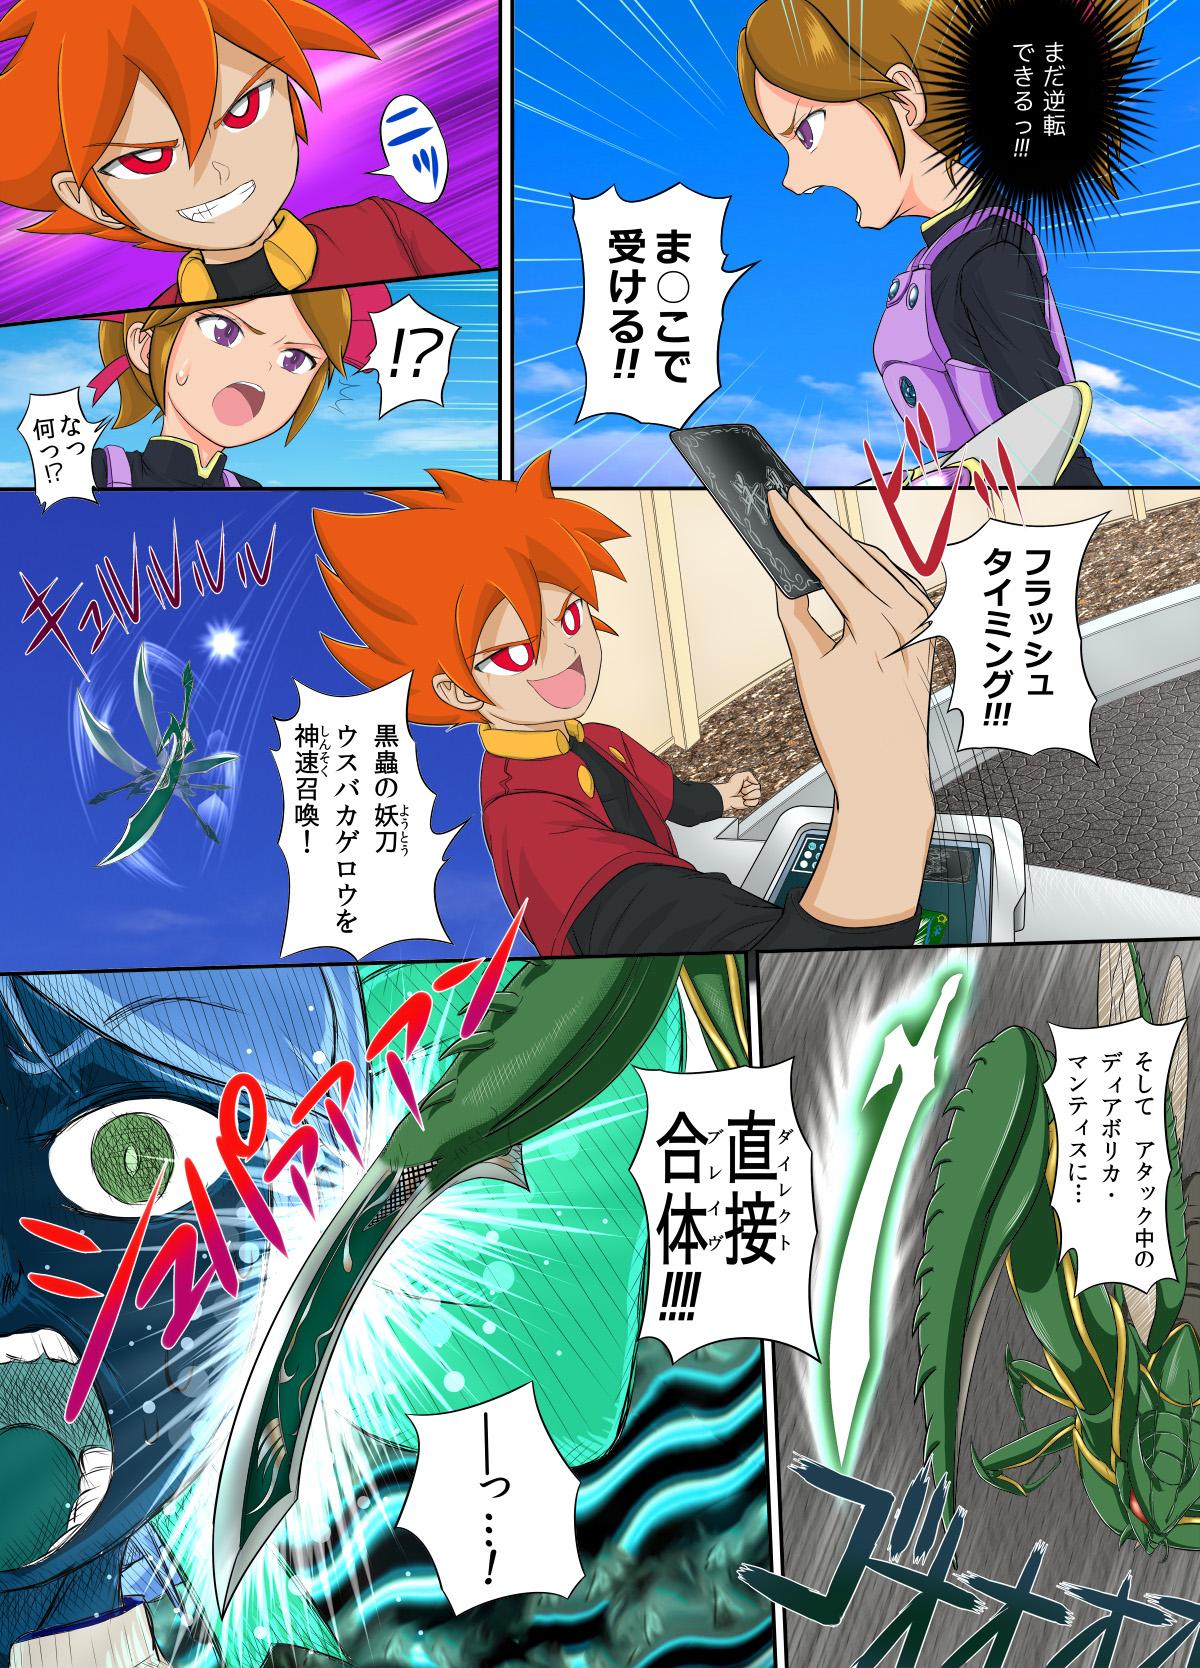 Battle Spirits Kimari vs Bashin 4